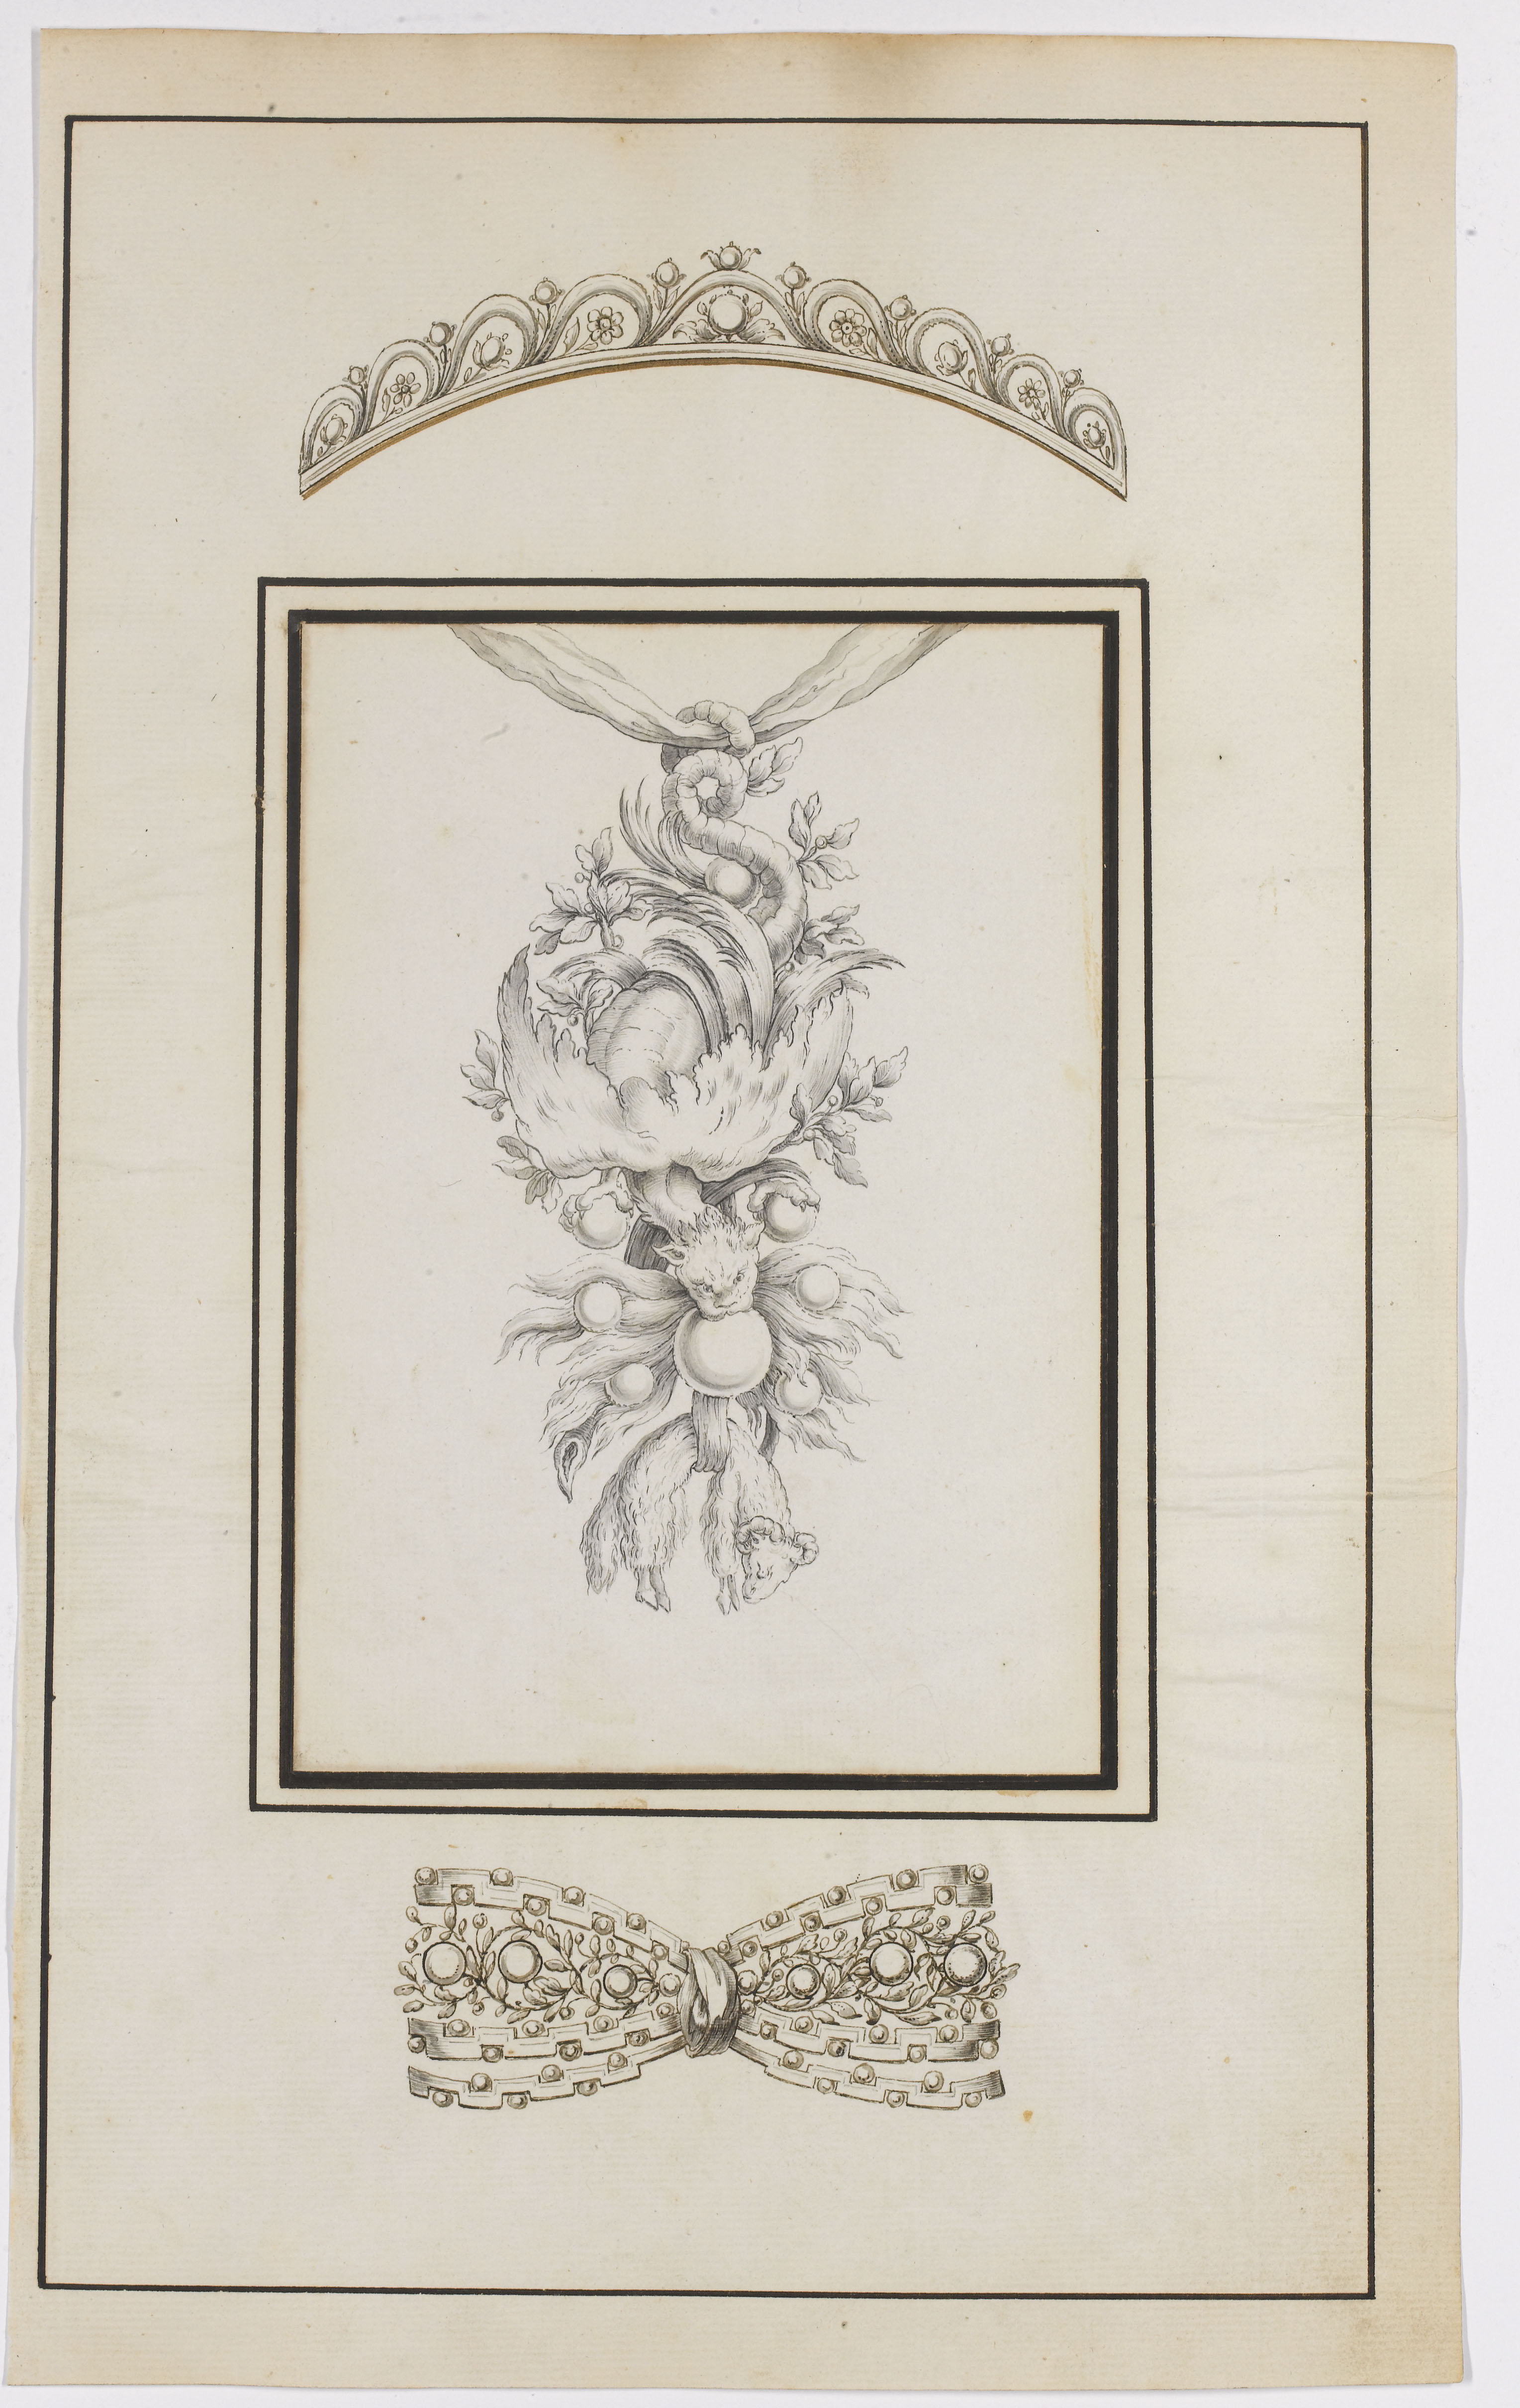 Ontwerp voor het insigne van de Orde van het Gulden Vlies (c) Sotheby's images